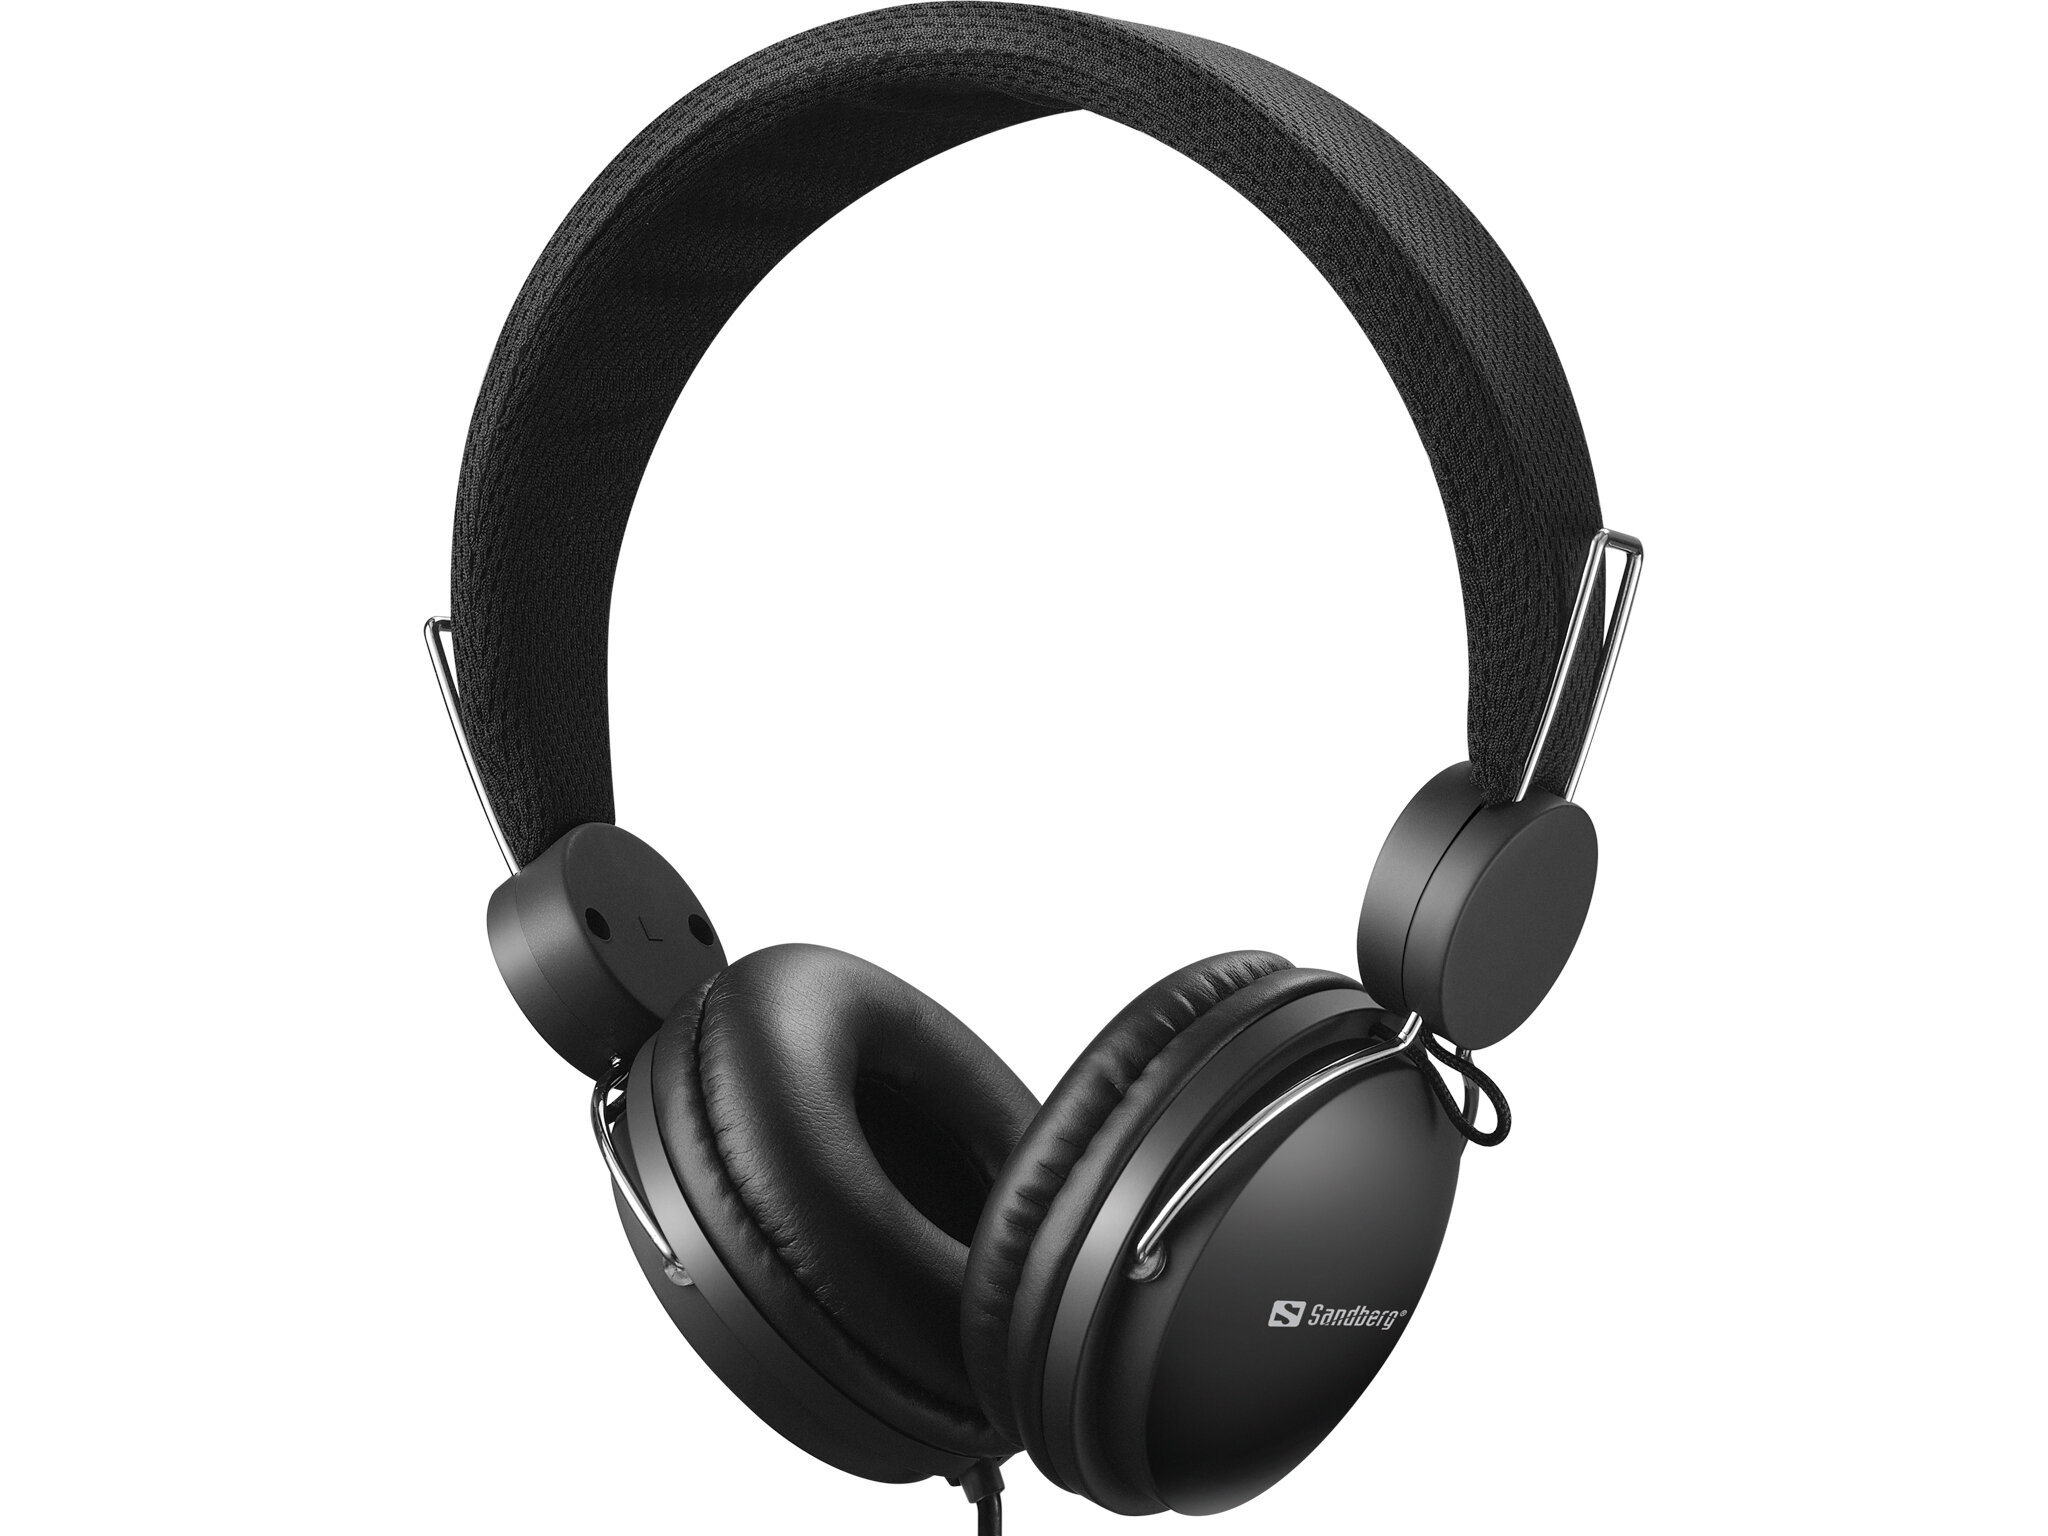 Zestaw słuchawkowy Sandberg Headset z mikrofonem liniowym czarny od frontu na białym tle